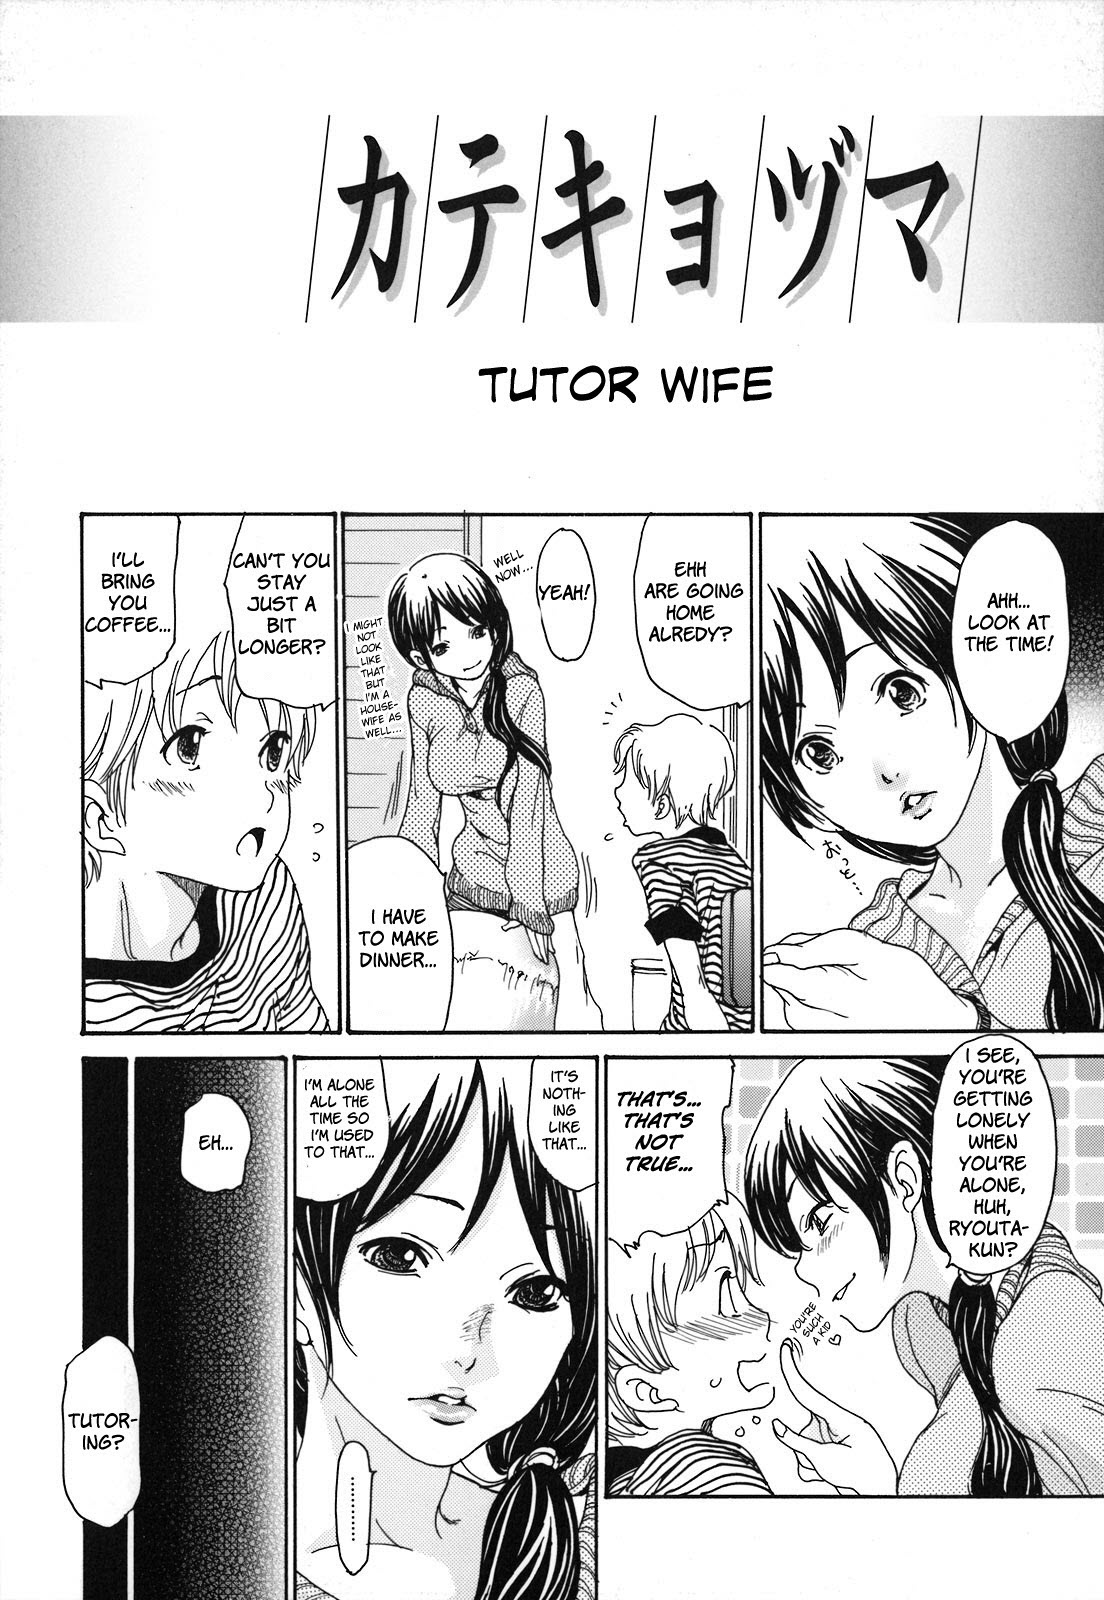 Tutor Wife by Aoi Hitori Hentai Comics